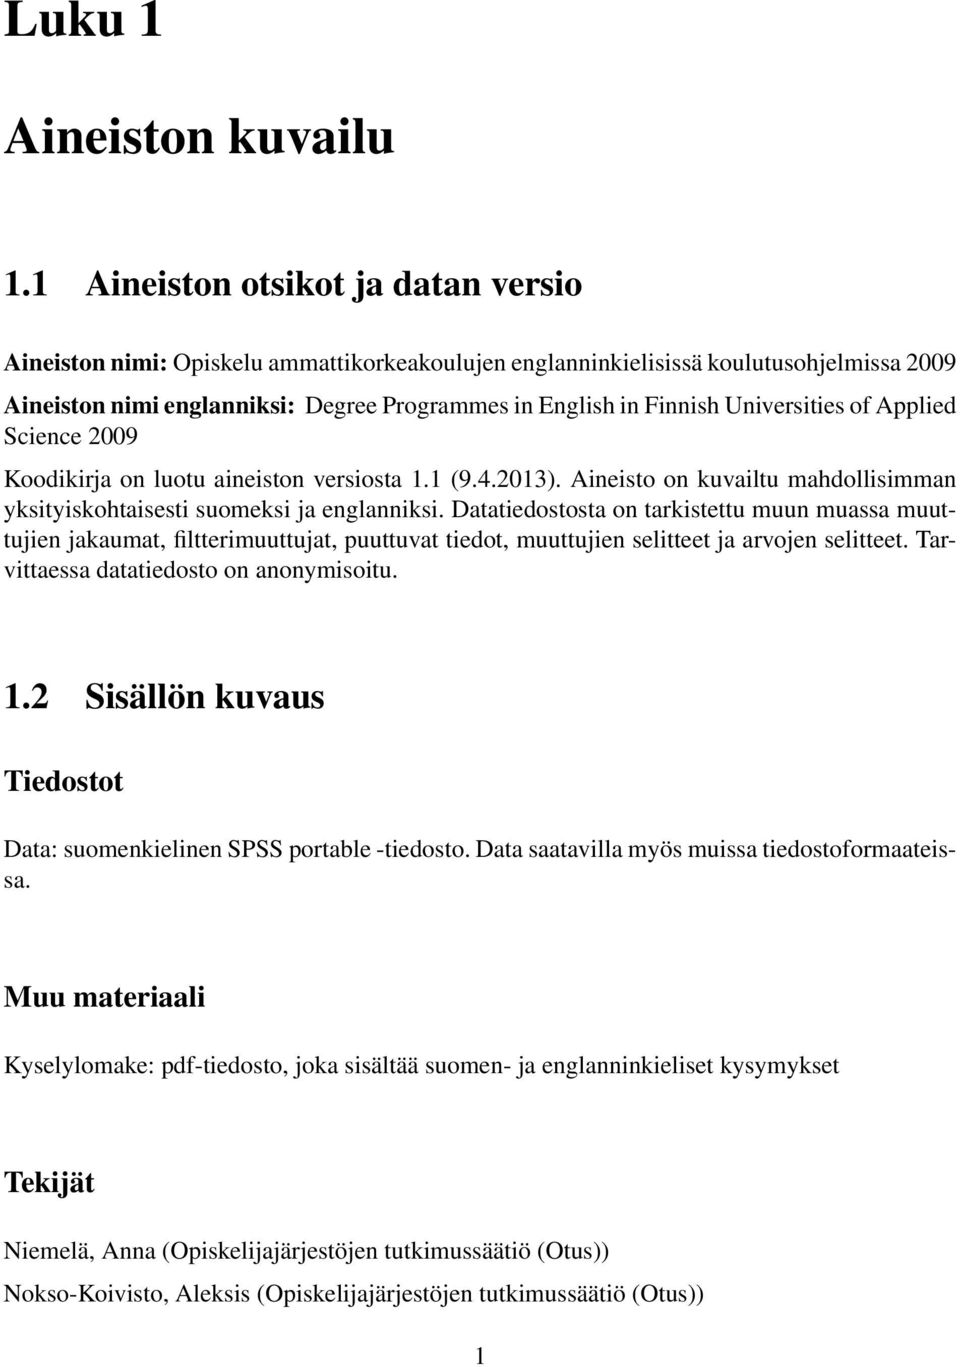 Universities of Applied Science 2009 Koodikirja on luotu aineiston versiosta 1.1 (9.4.2013). Aineisto on kuvailtu mahdollisimman yksityiskohtaisesti suomeksi ja englanniksi.